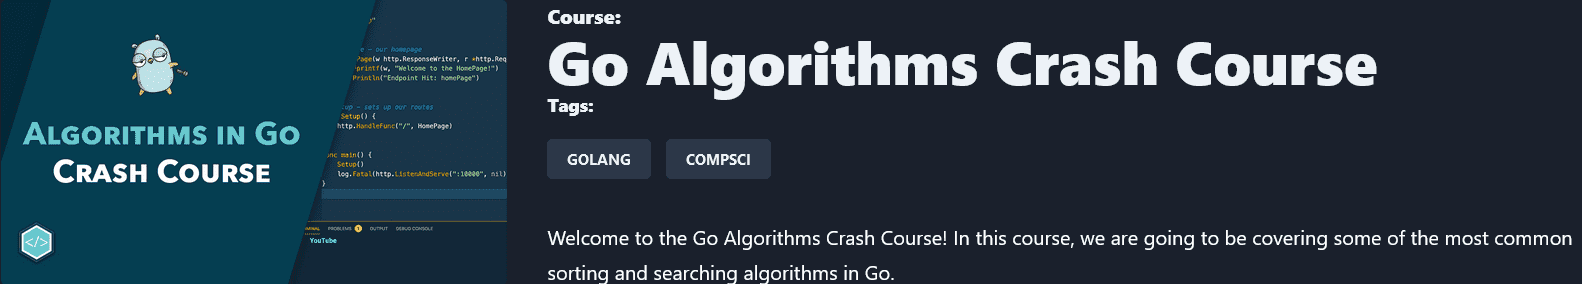 Изображение [tutorialedge] Go Ускоренный курс алгоритмов Go Algorithms Crash Course в посте 299467